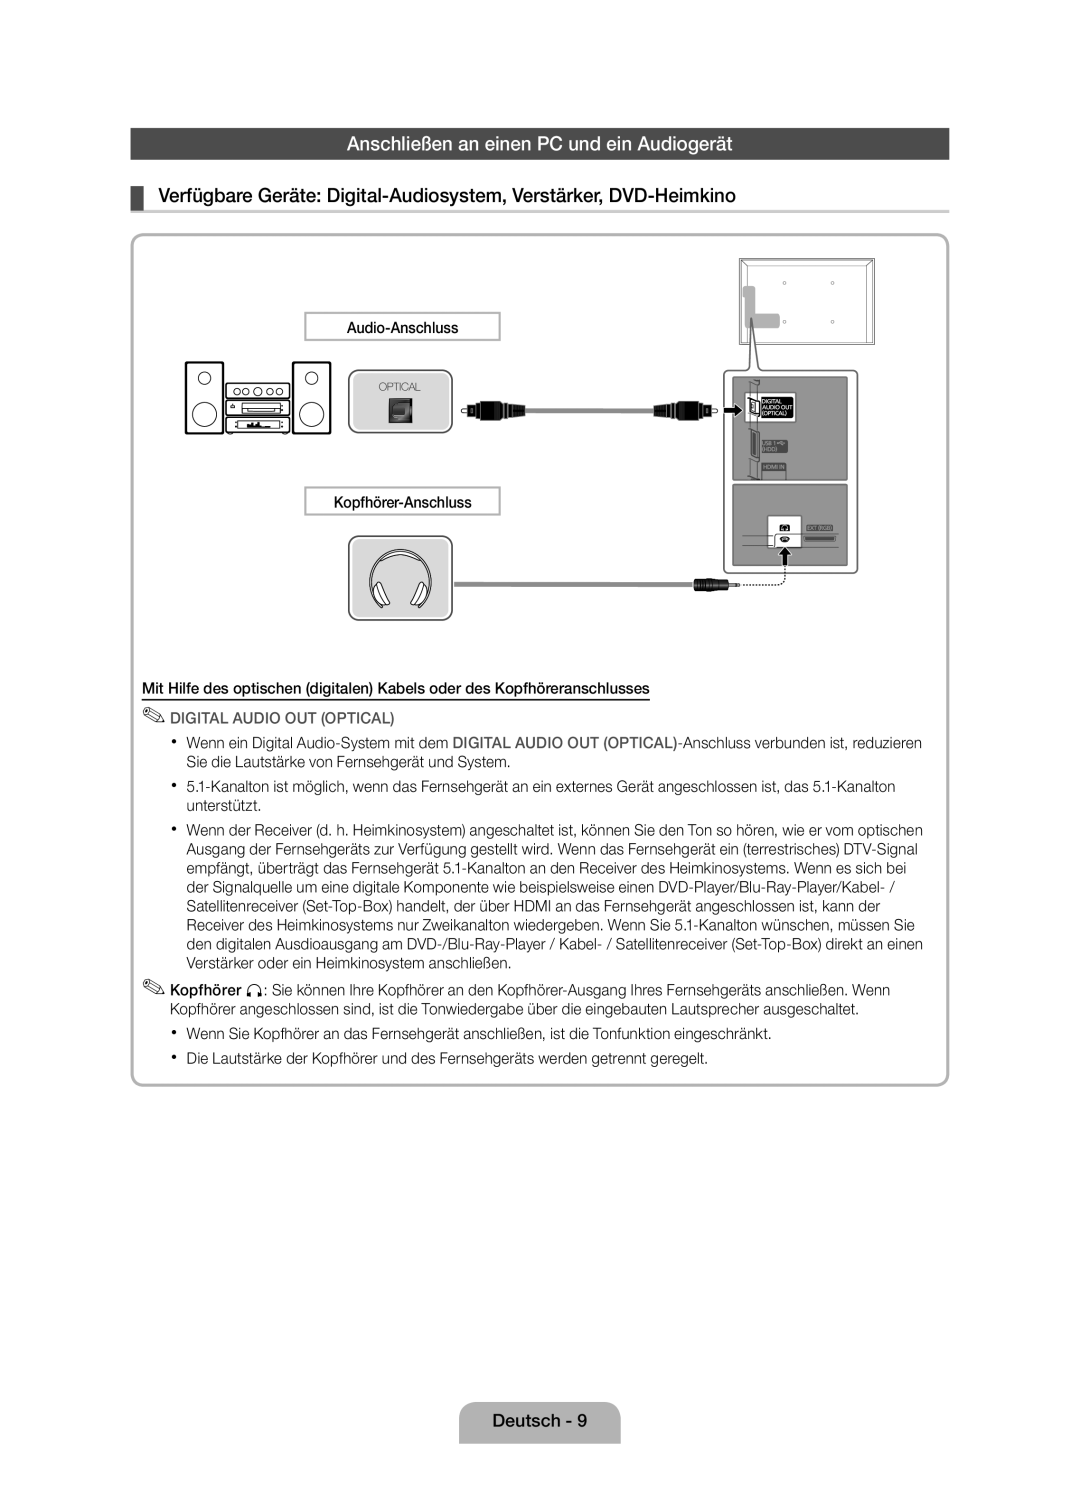 Samsung UE46D5000PWXXN, UE40D5000PWXTK manual Anschließen an einen PC und ein Audiogerät, Digital Audio Out Optical 